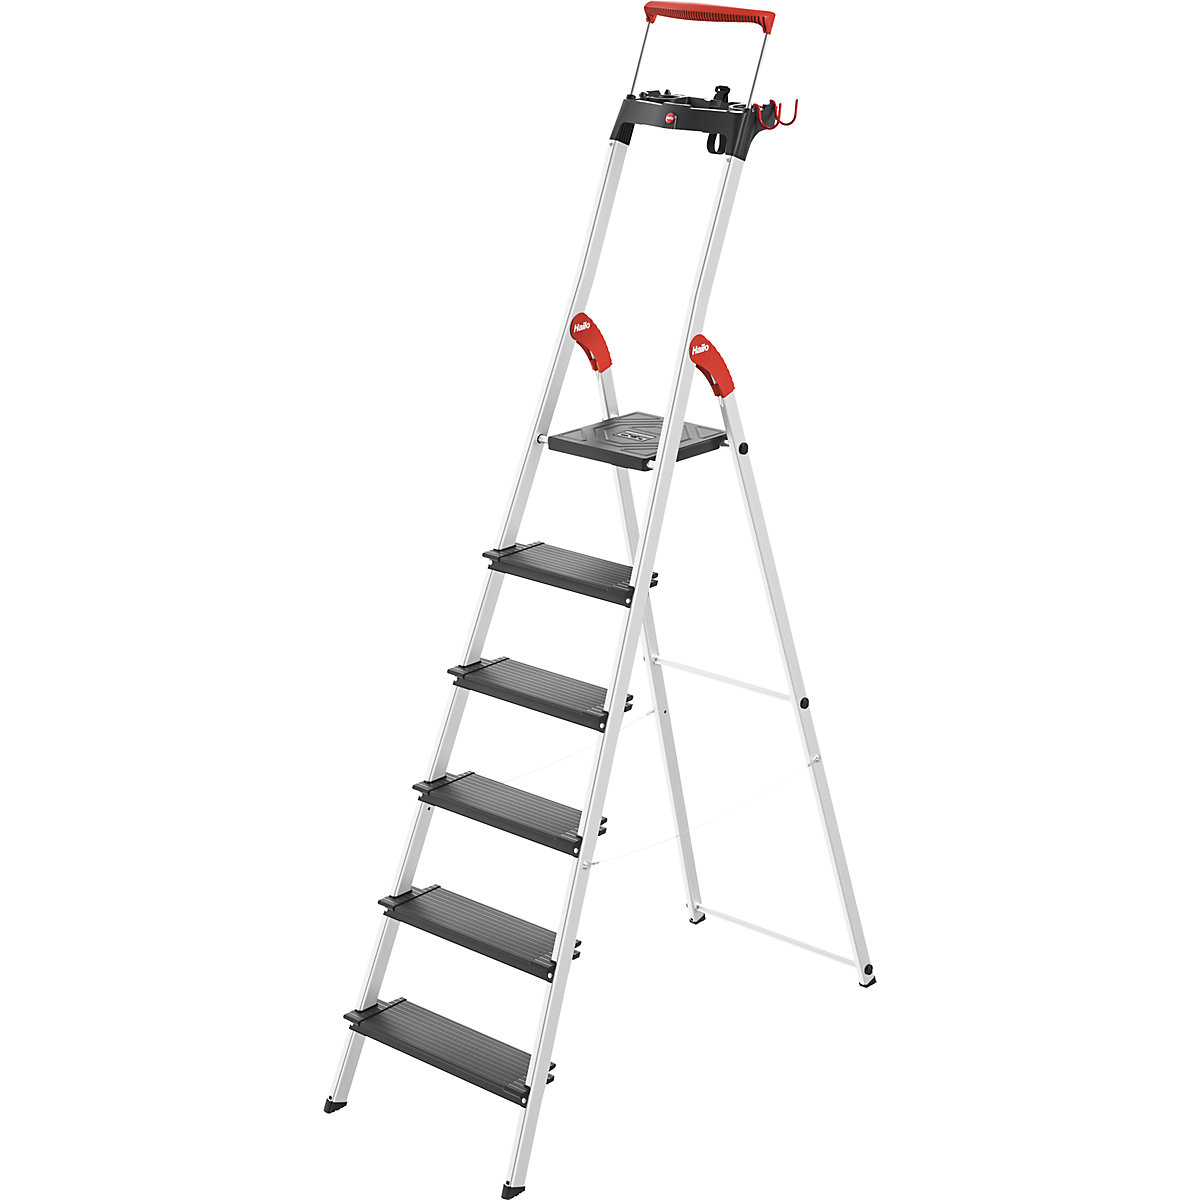 Varnostna lestev TopLine L100 – Hailo, nosilnost do 150 kg, 6 stopnic, od 2 kosov